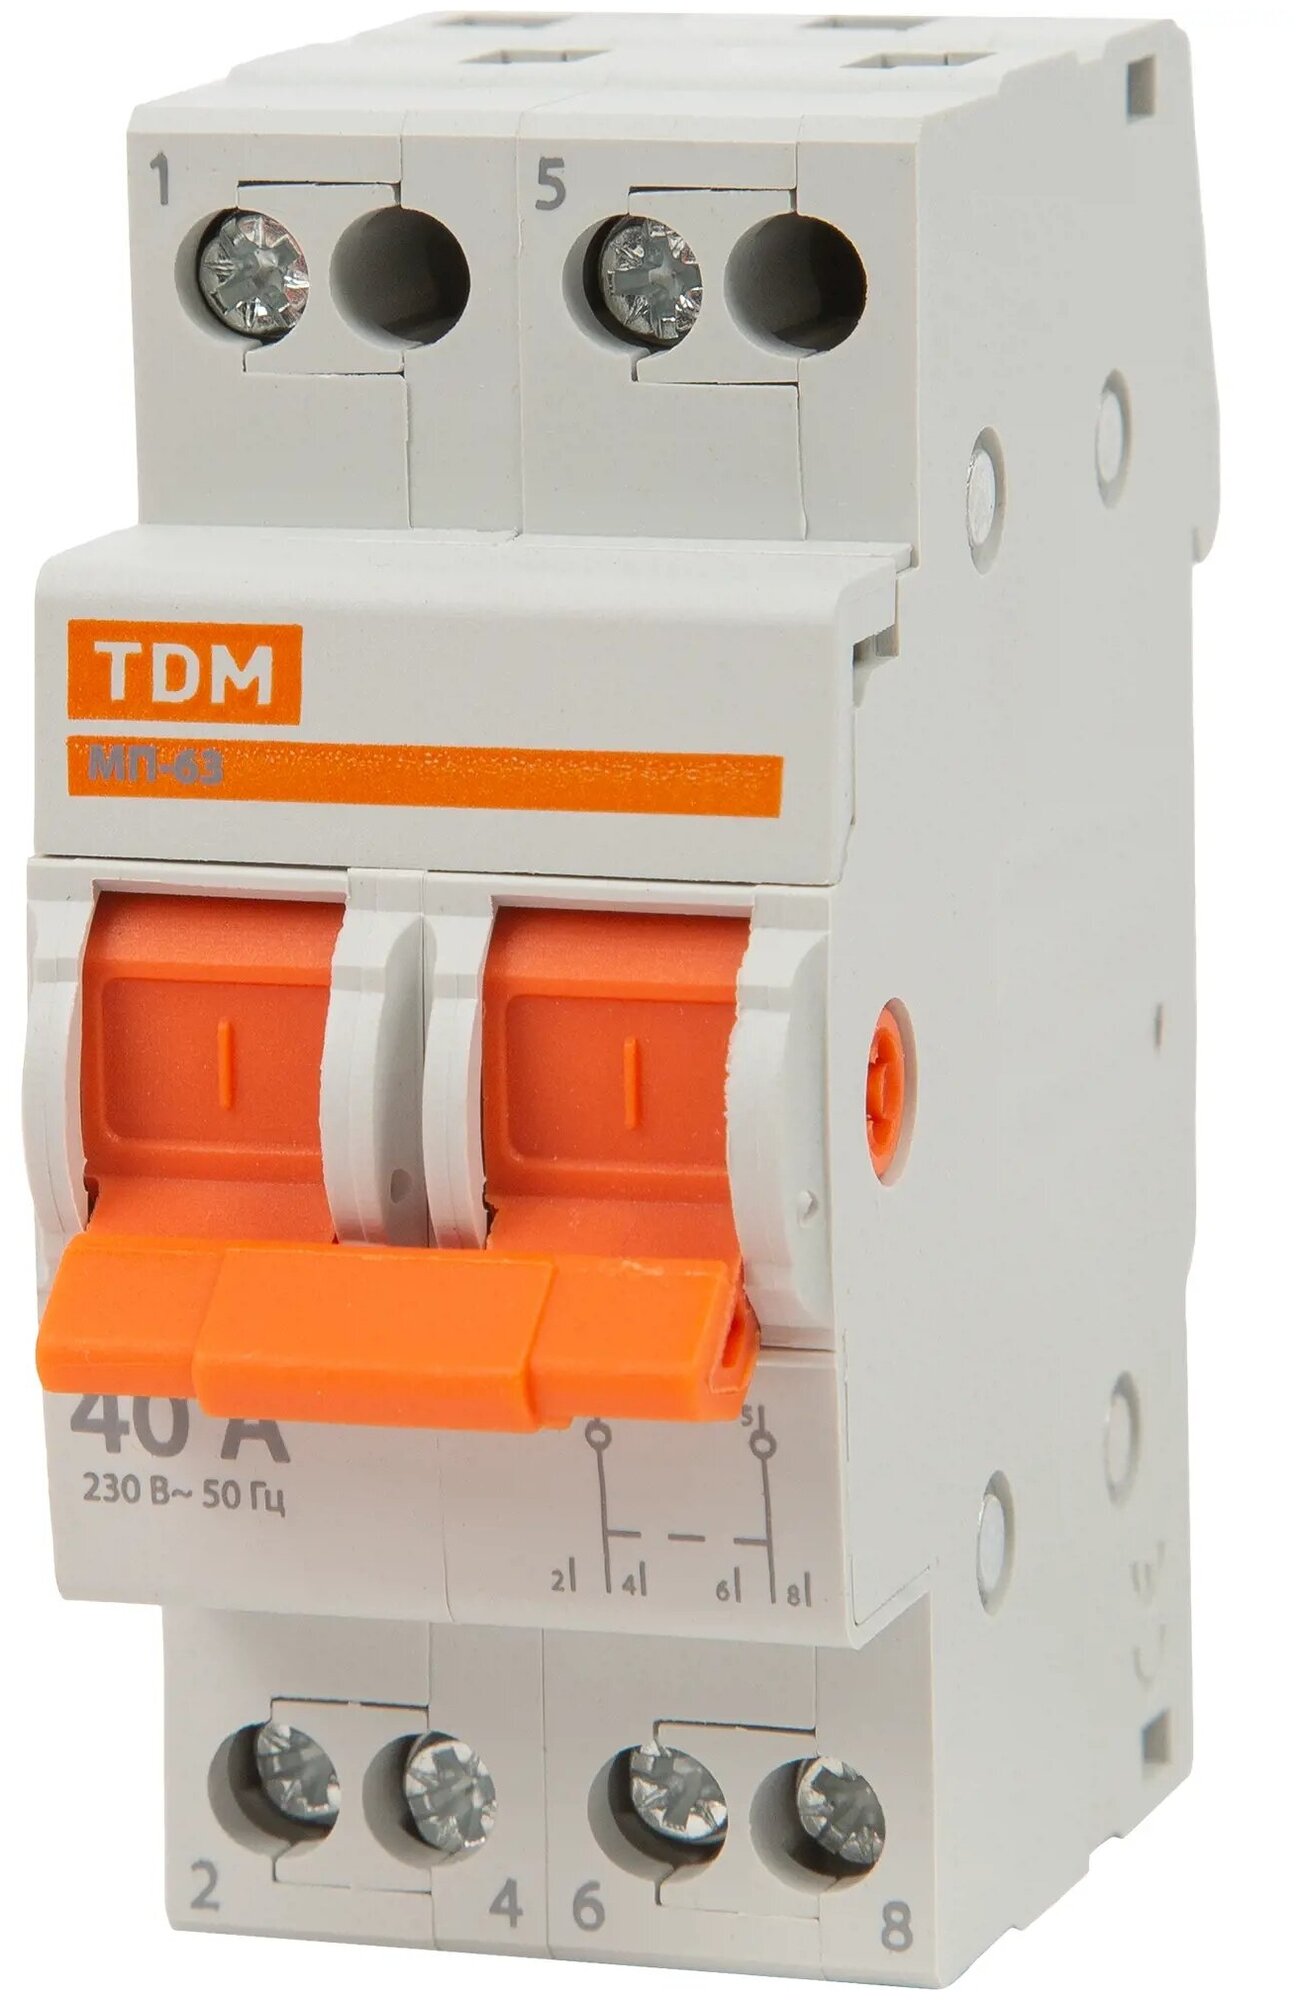 Выключатель нагрузки TDM Electric МП-63 2P 40 А трёхпозиционный